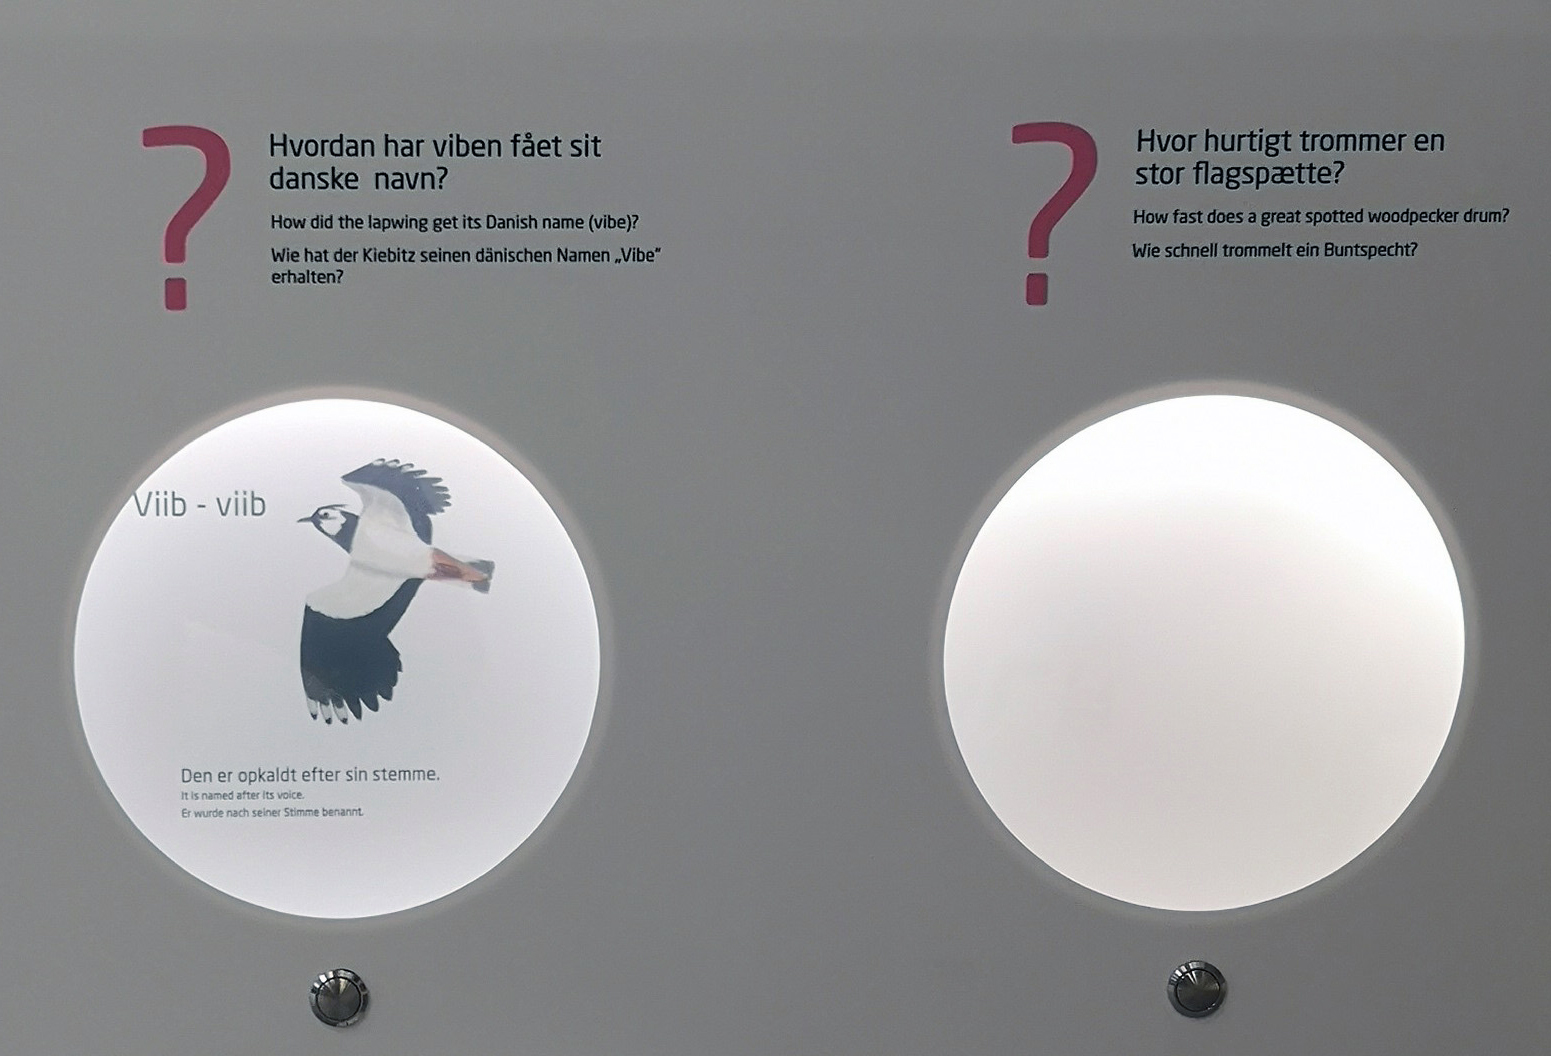 Smartglasset i Naturrummet ved Gyldensteen Strand virker som spørgeklapper. Glasset skjuler svaret på spørgsmål indtil publikum trykker på knappen og smartglasset bliver transparent. Bygget for Aage V. Jensen Naturfond 2020.